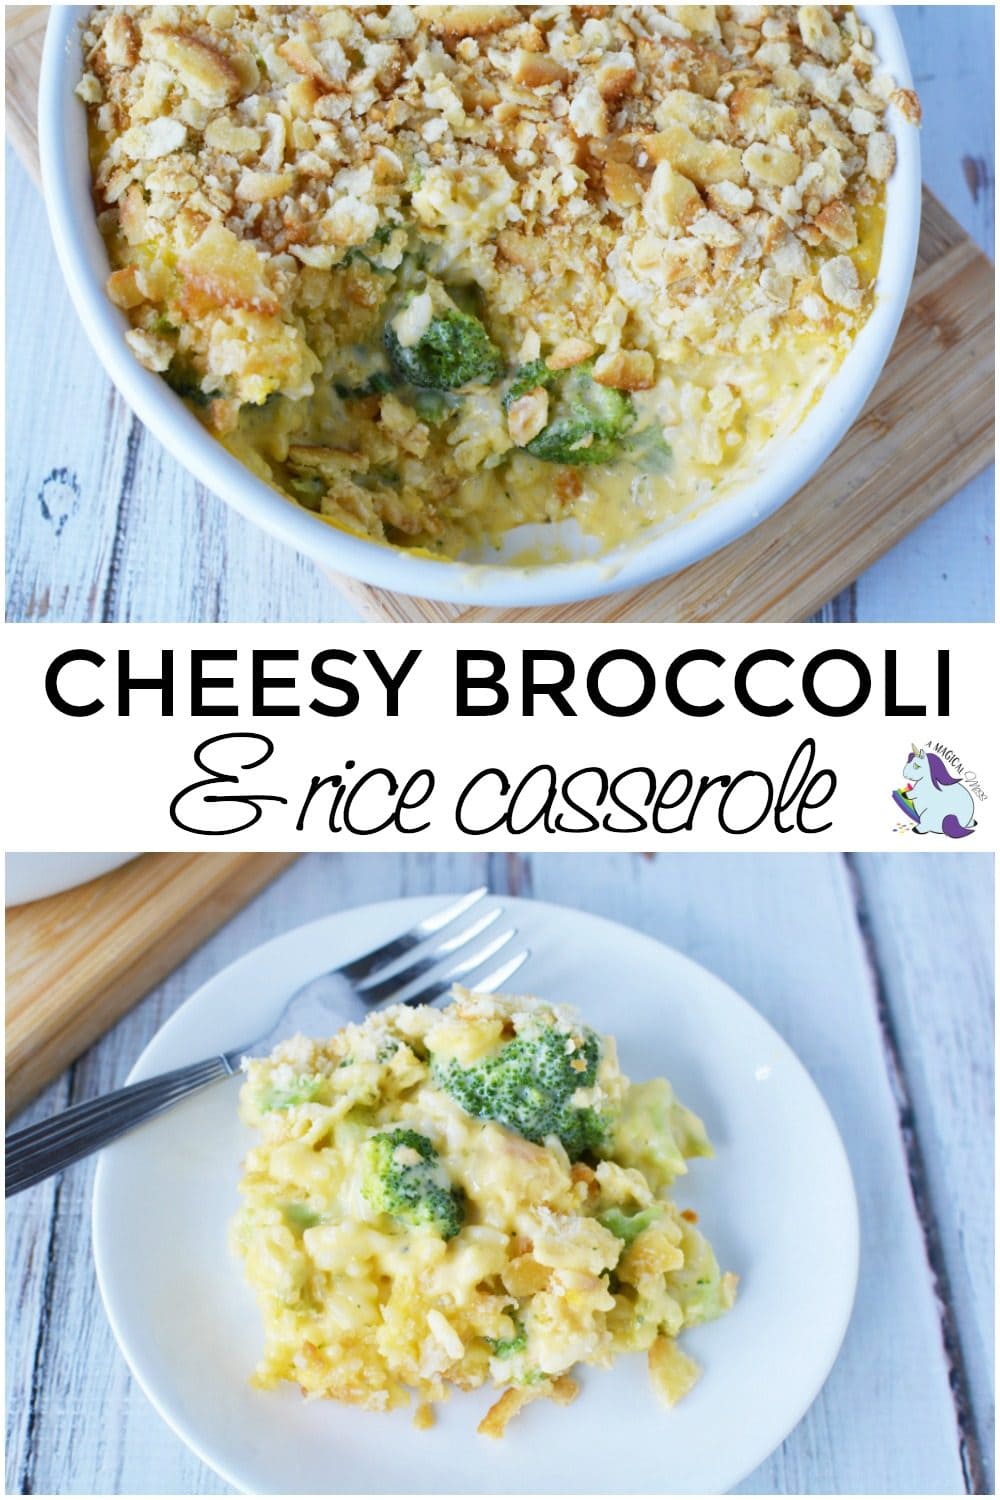 Broccoli rice casserole recipe